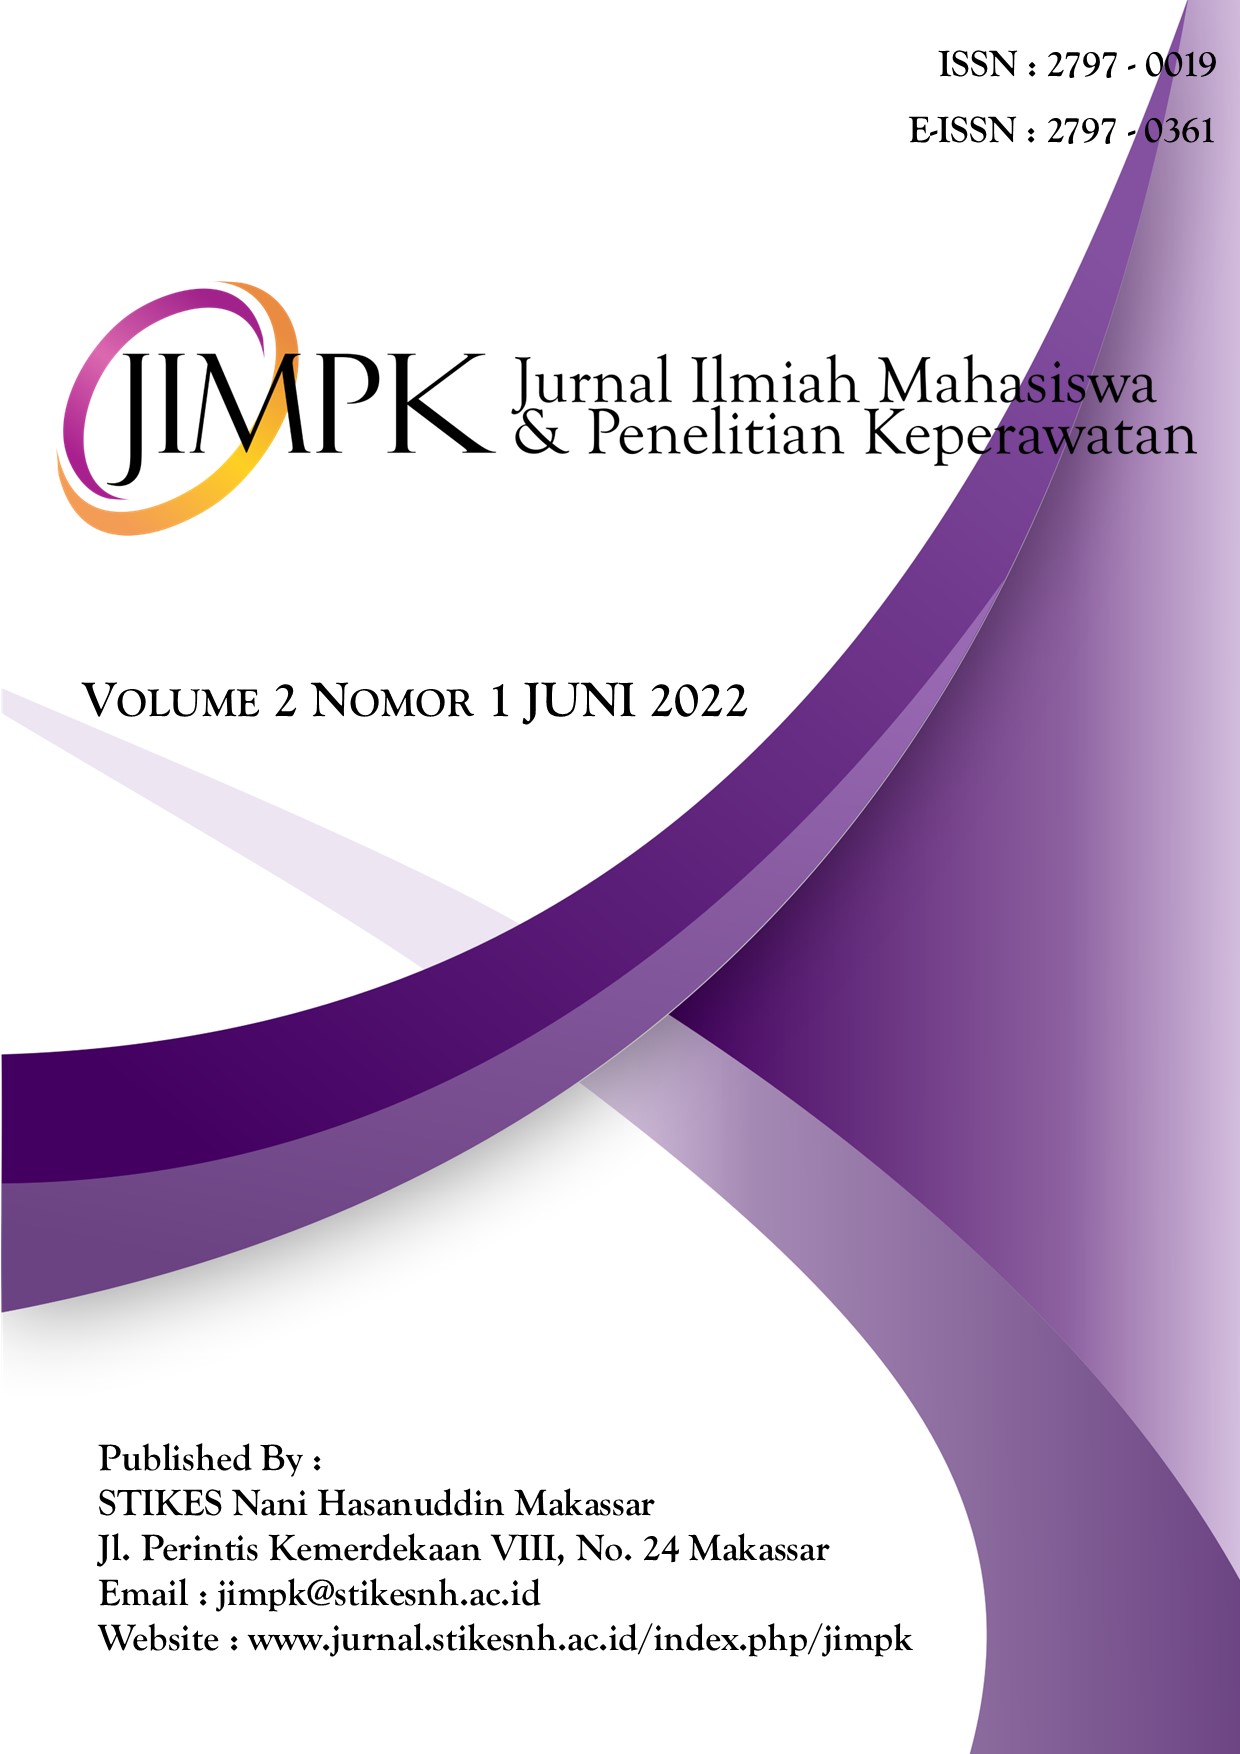 					View Vol. 2 No. 1 (2022): Jurnal Ilmiah Mahasiswa & Penelitian Keperawatan
				